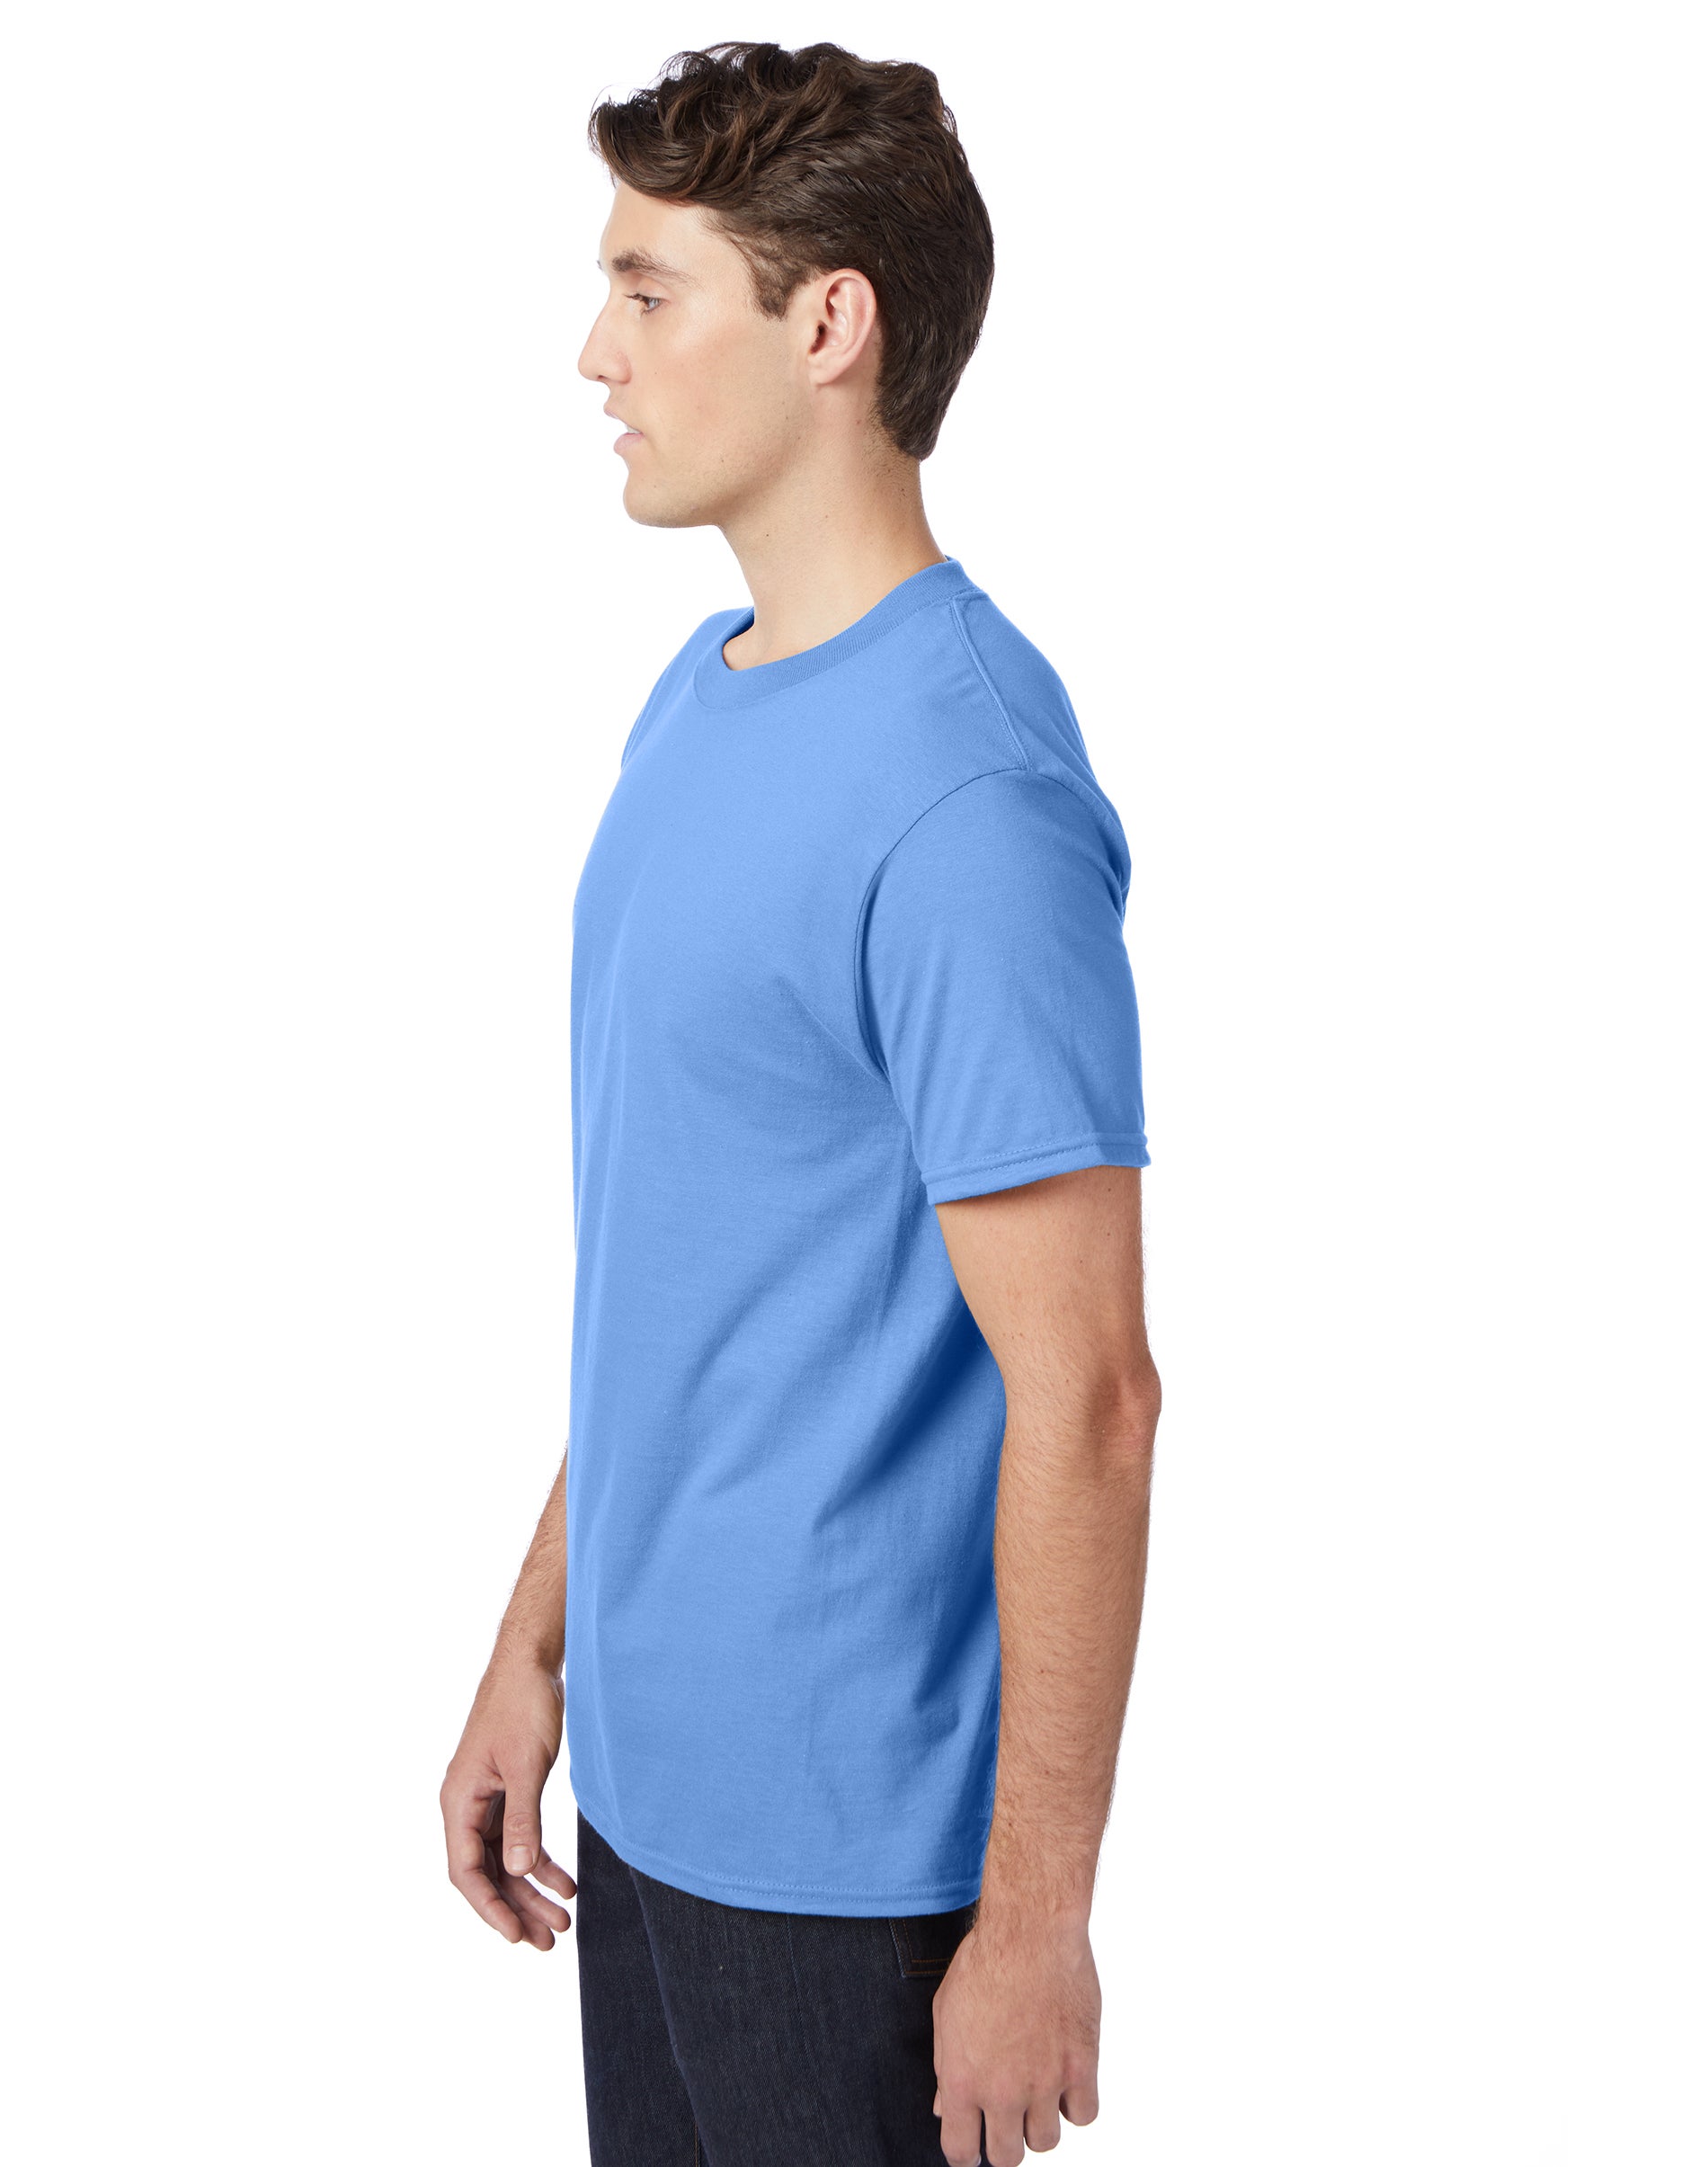 Hanes Beefy-T Unisex Short Sleeve T-Shirt Carolina Blue S - image 2 of 4